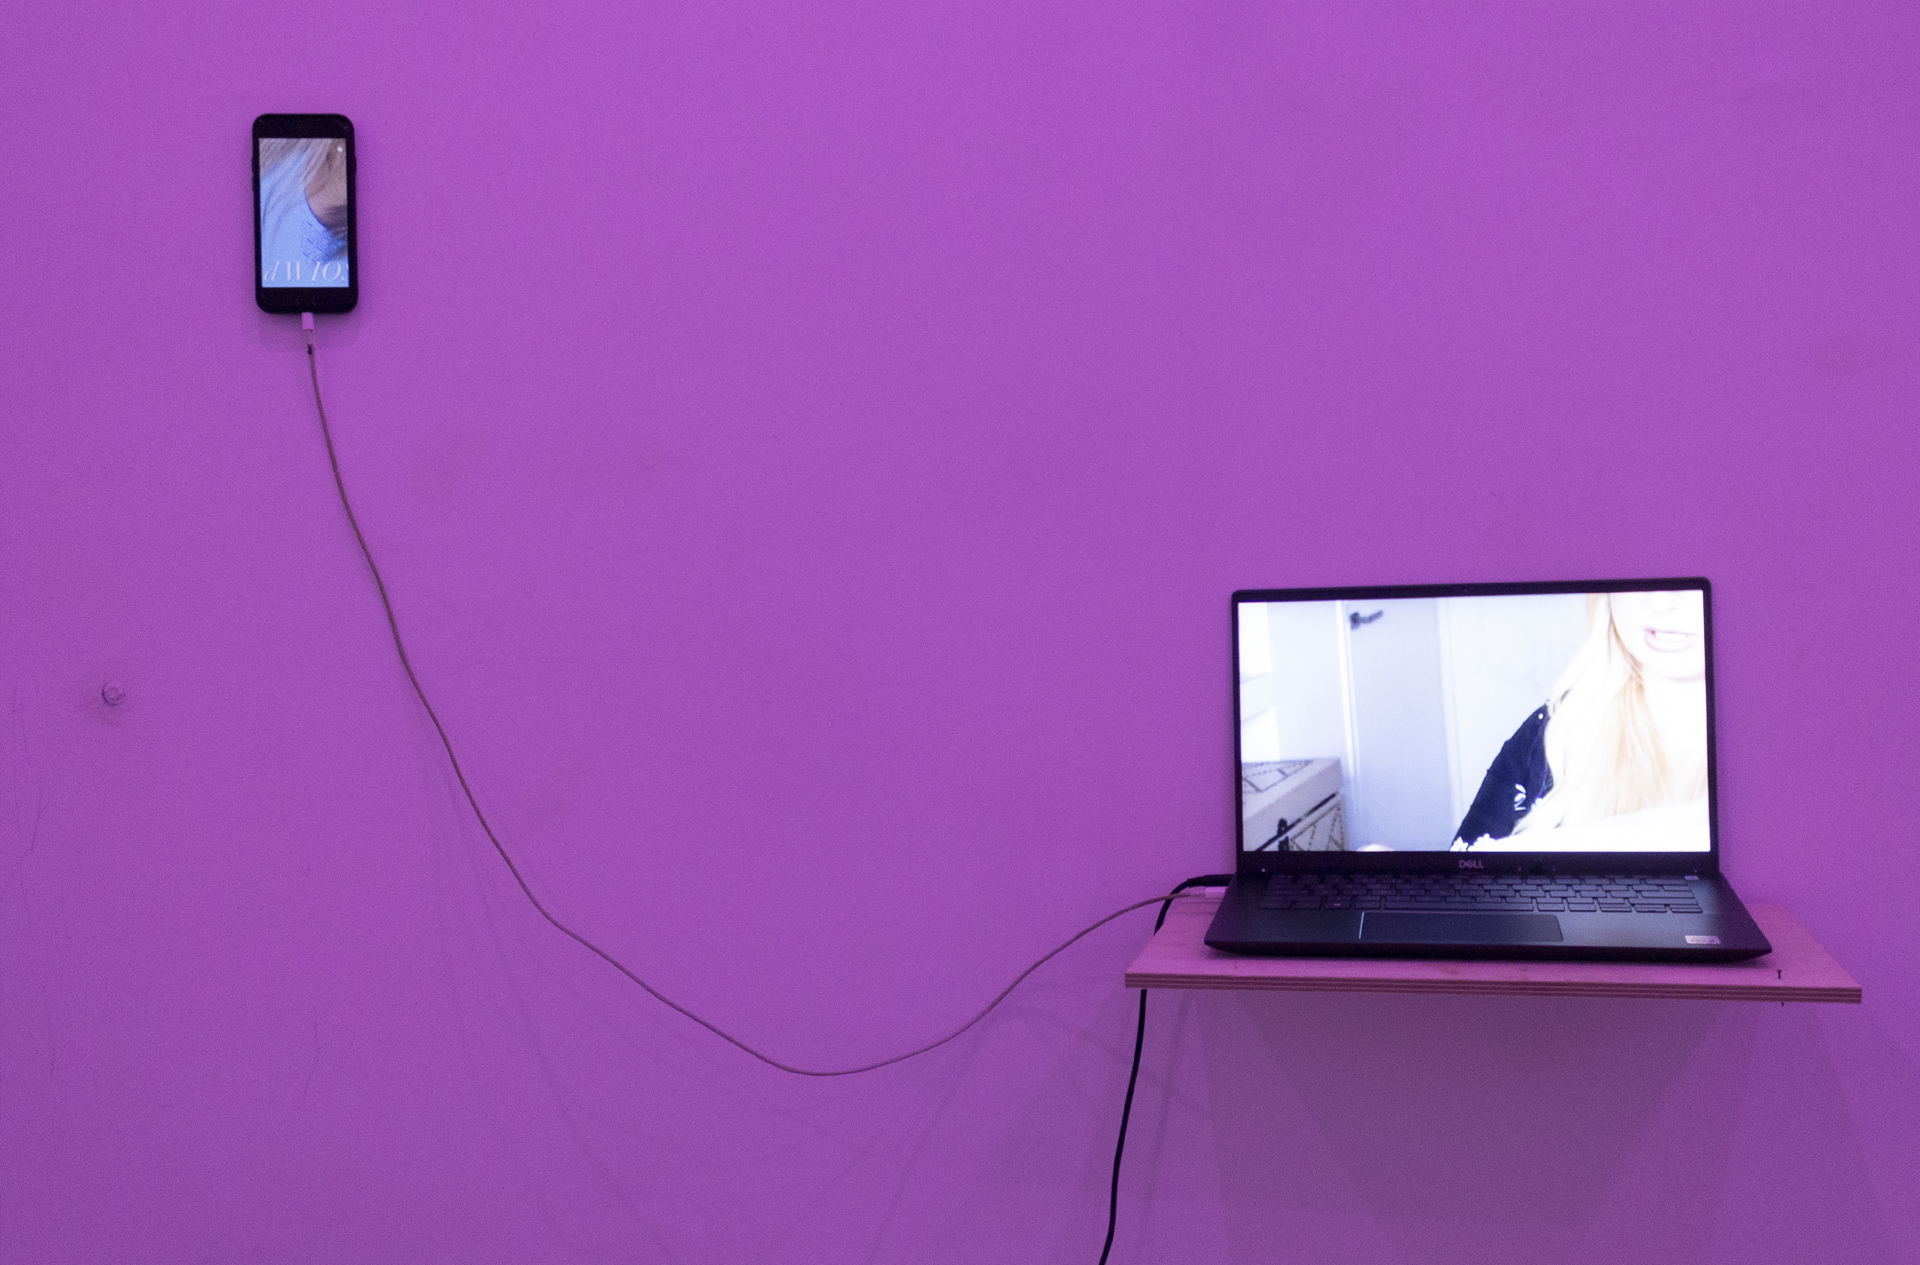 Dwa elementy elektroniczne (telefon komórkowy w lewym górnym rogu oraz laptop umieszczony w lewym dolnym rogu) na fioletowym tle. 